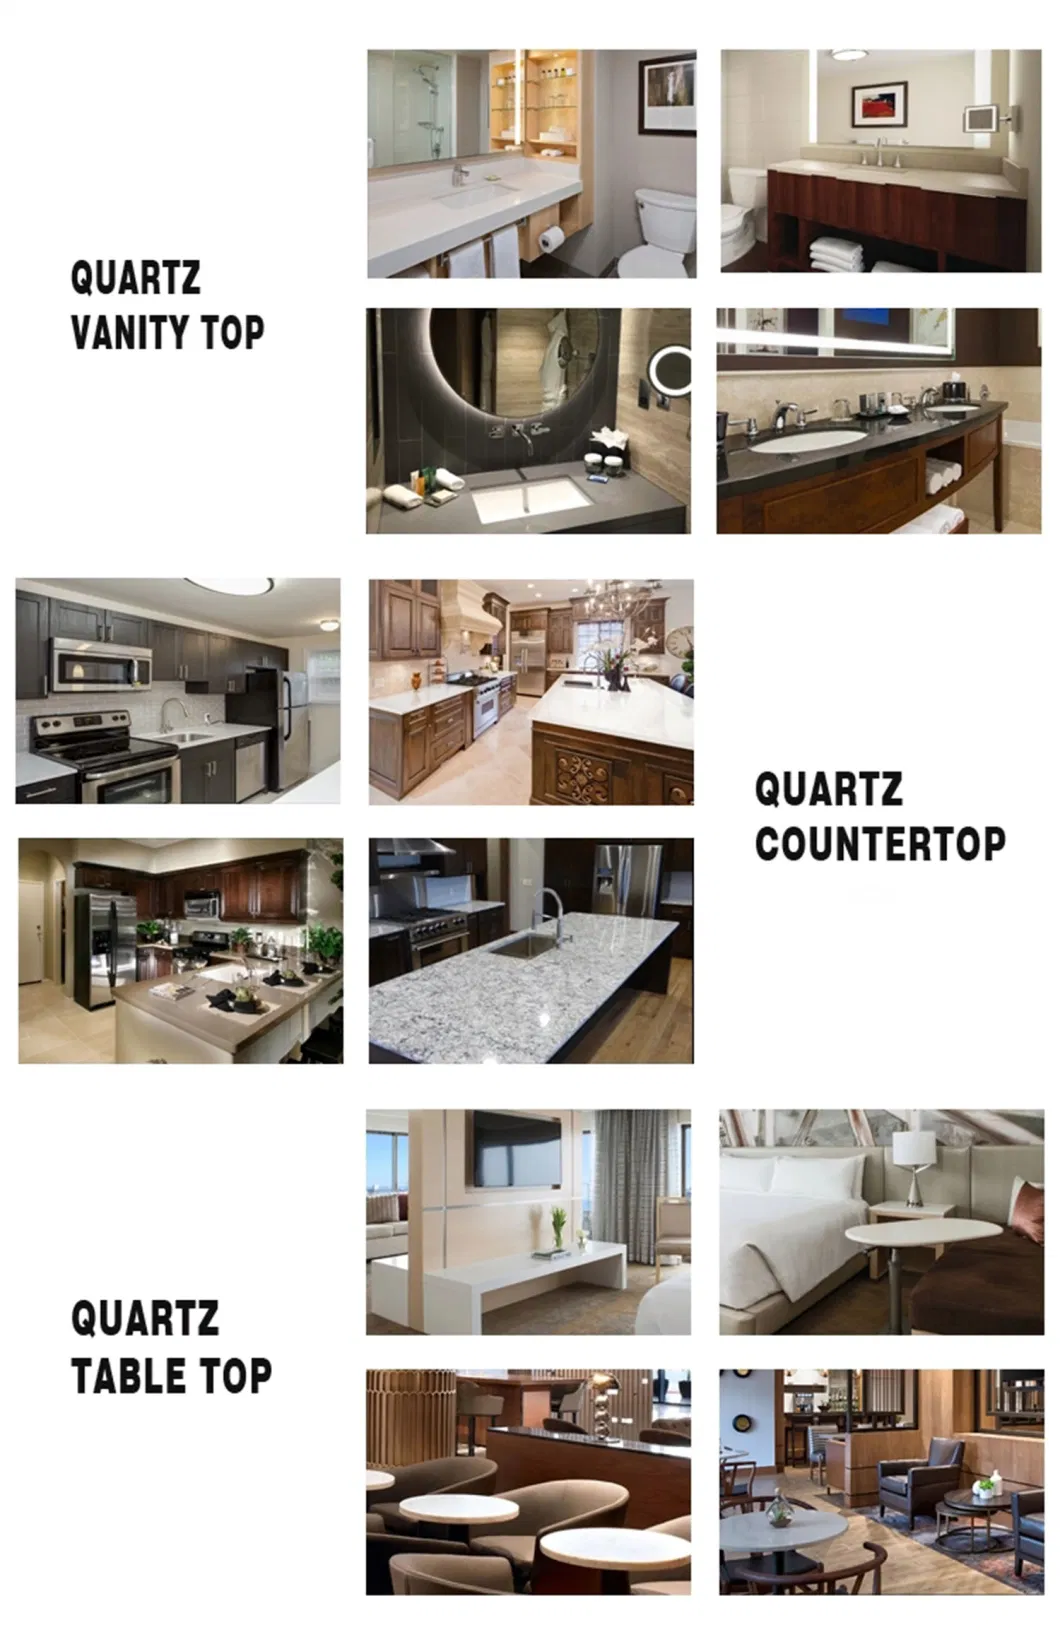 Kitchen Countertop Quartz Counter Top Artificial Stone Quartz Stone M2 Price